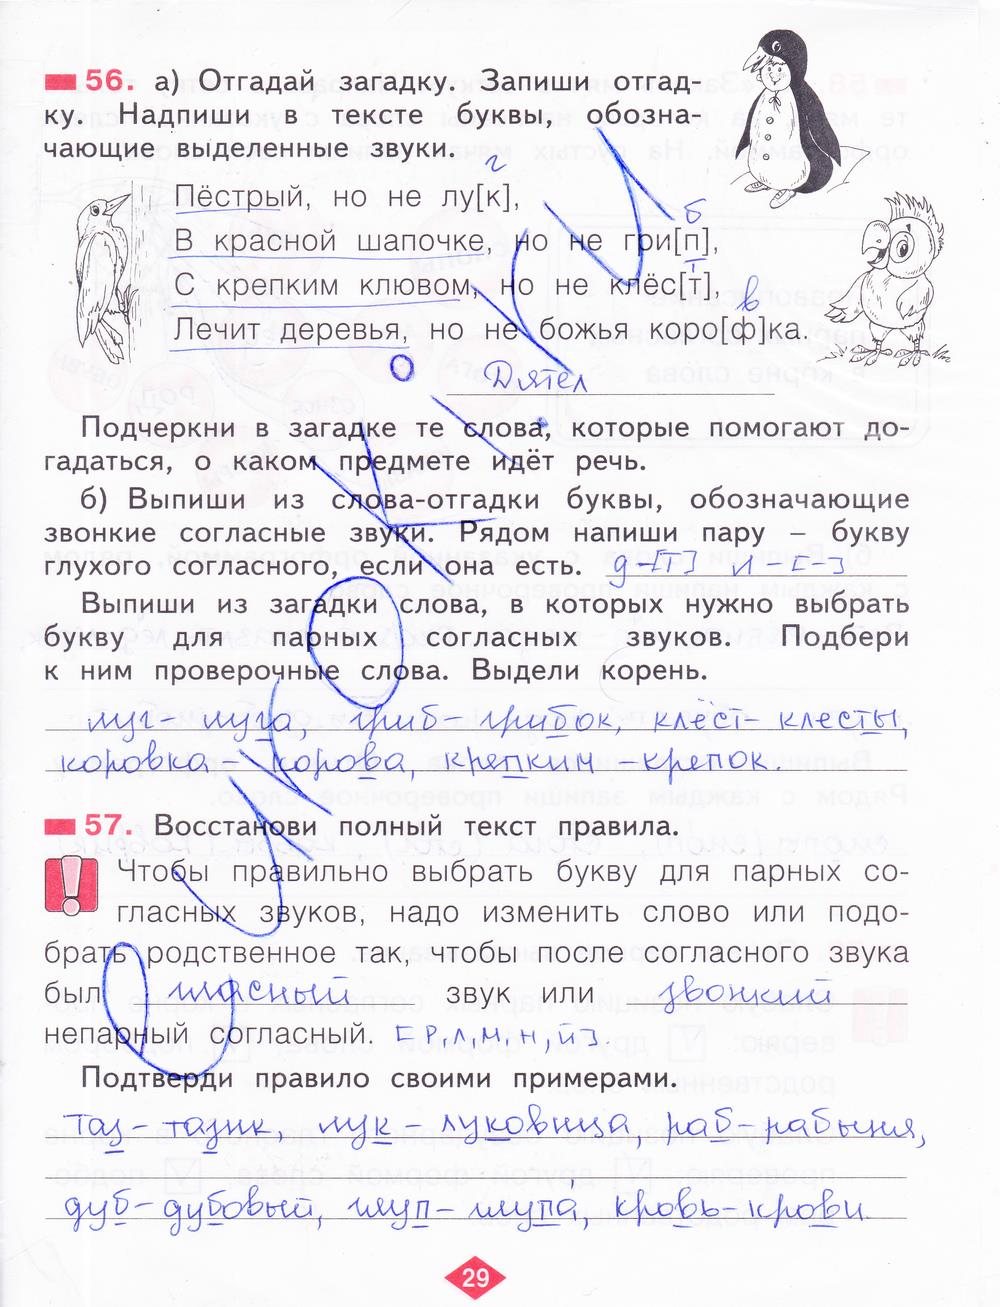 гдз 2 класс рабочая тетрадь часть 2 страница 29 русский язык Яковлева